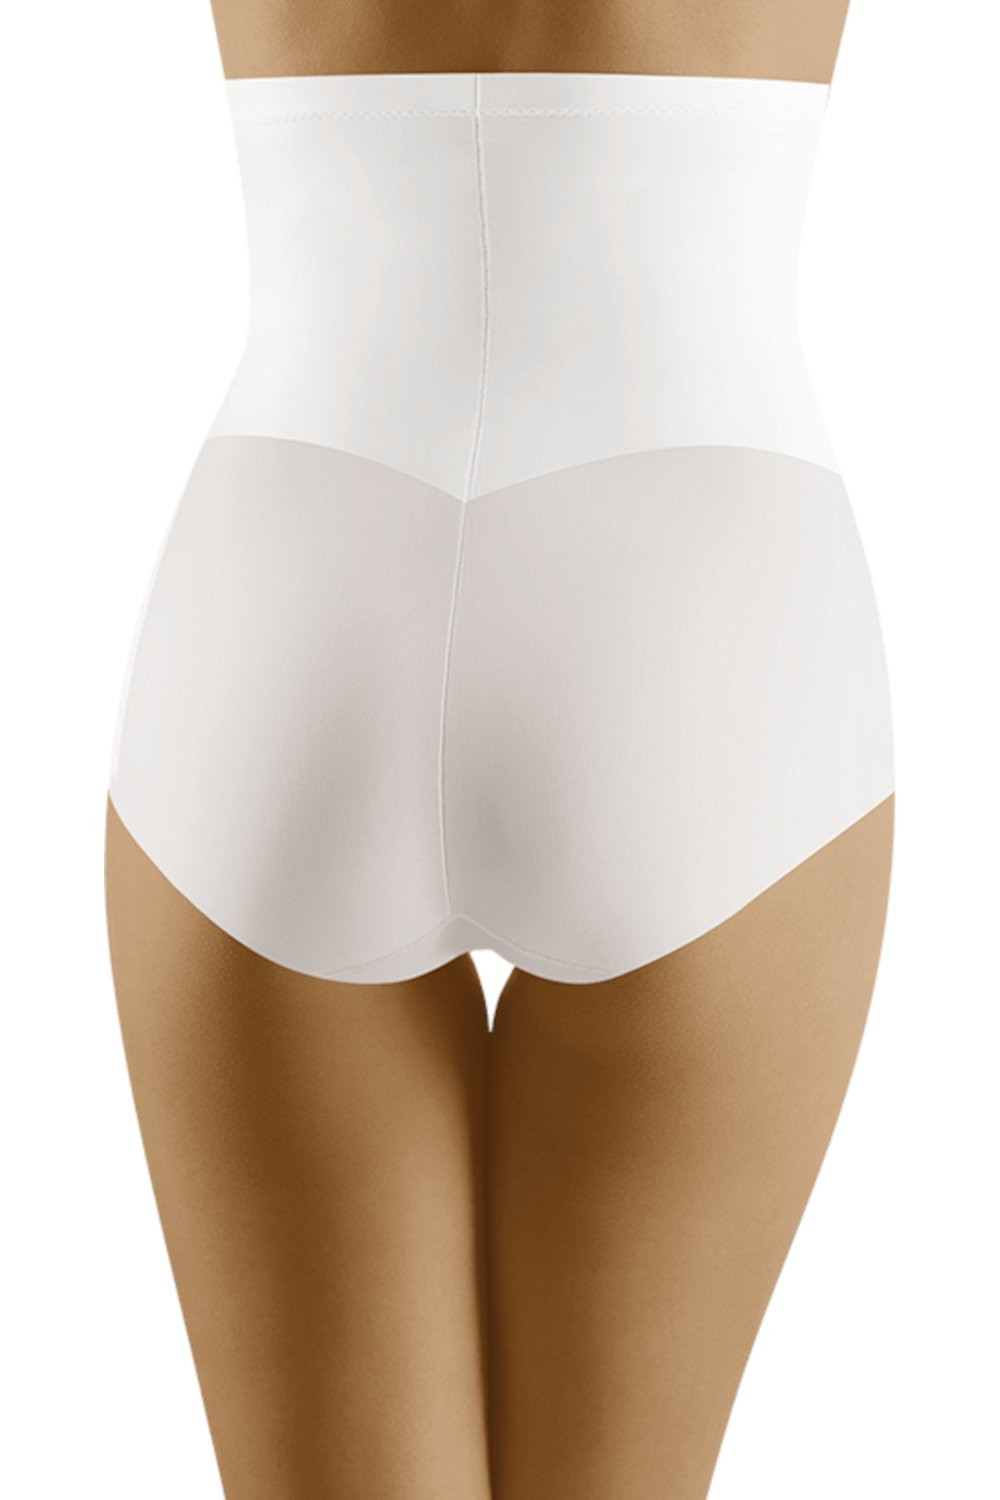 Stahovací kalhotky Modifica white Bílá XL